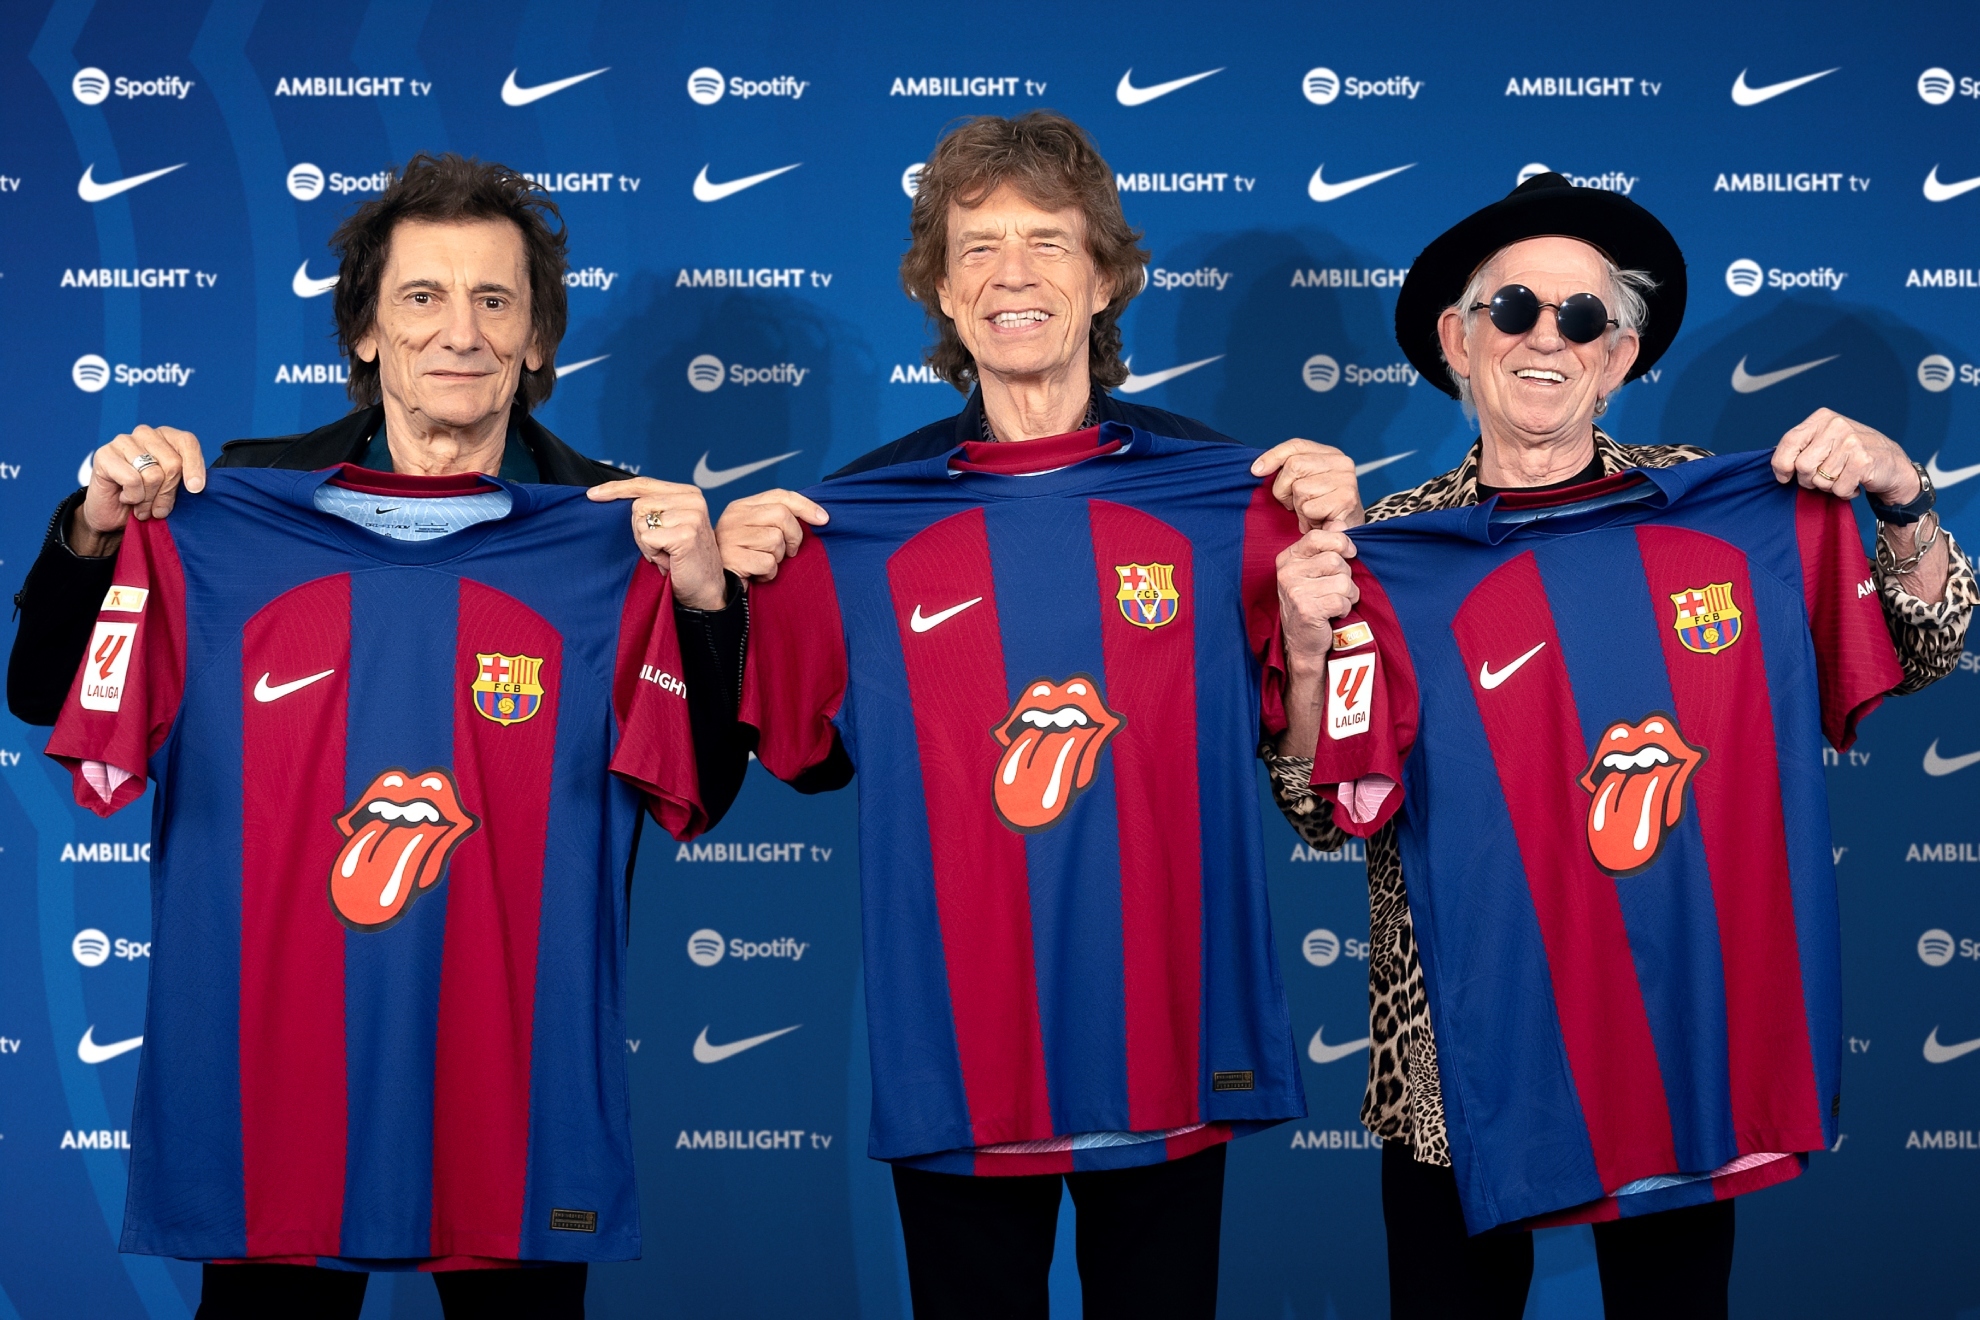 Por qué el Barcelona lleva la lengua de The Rolling Stones en su